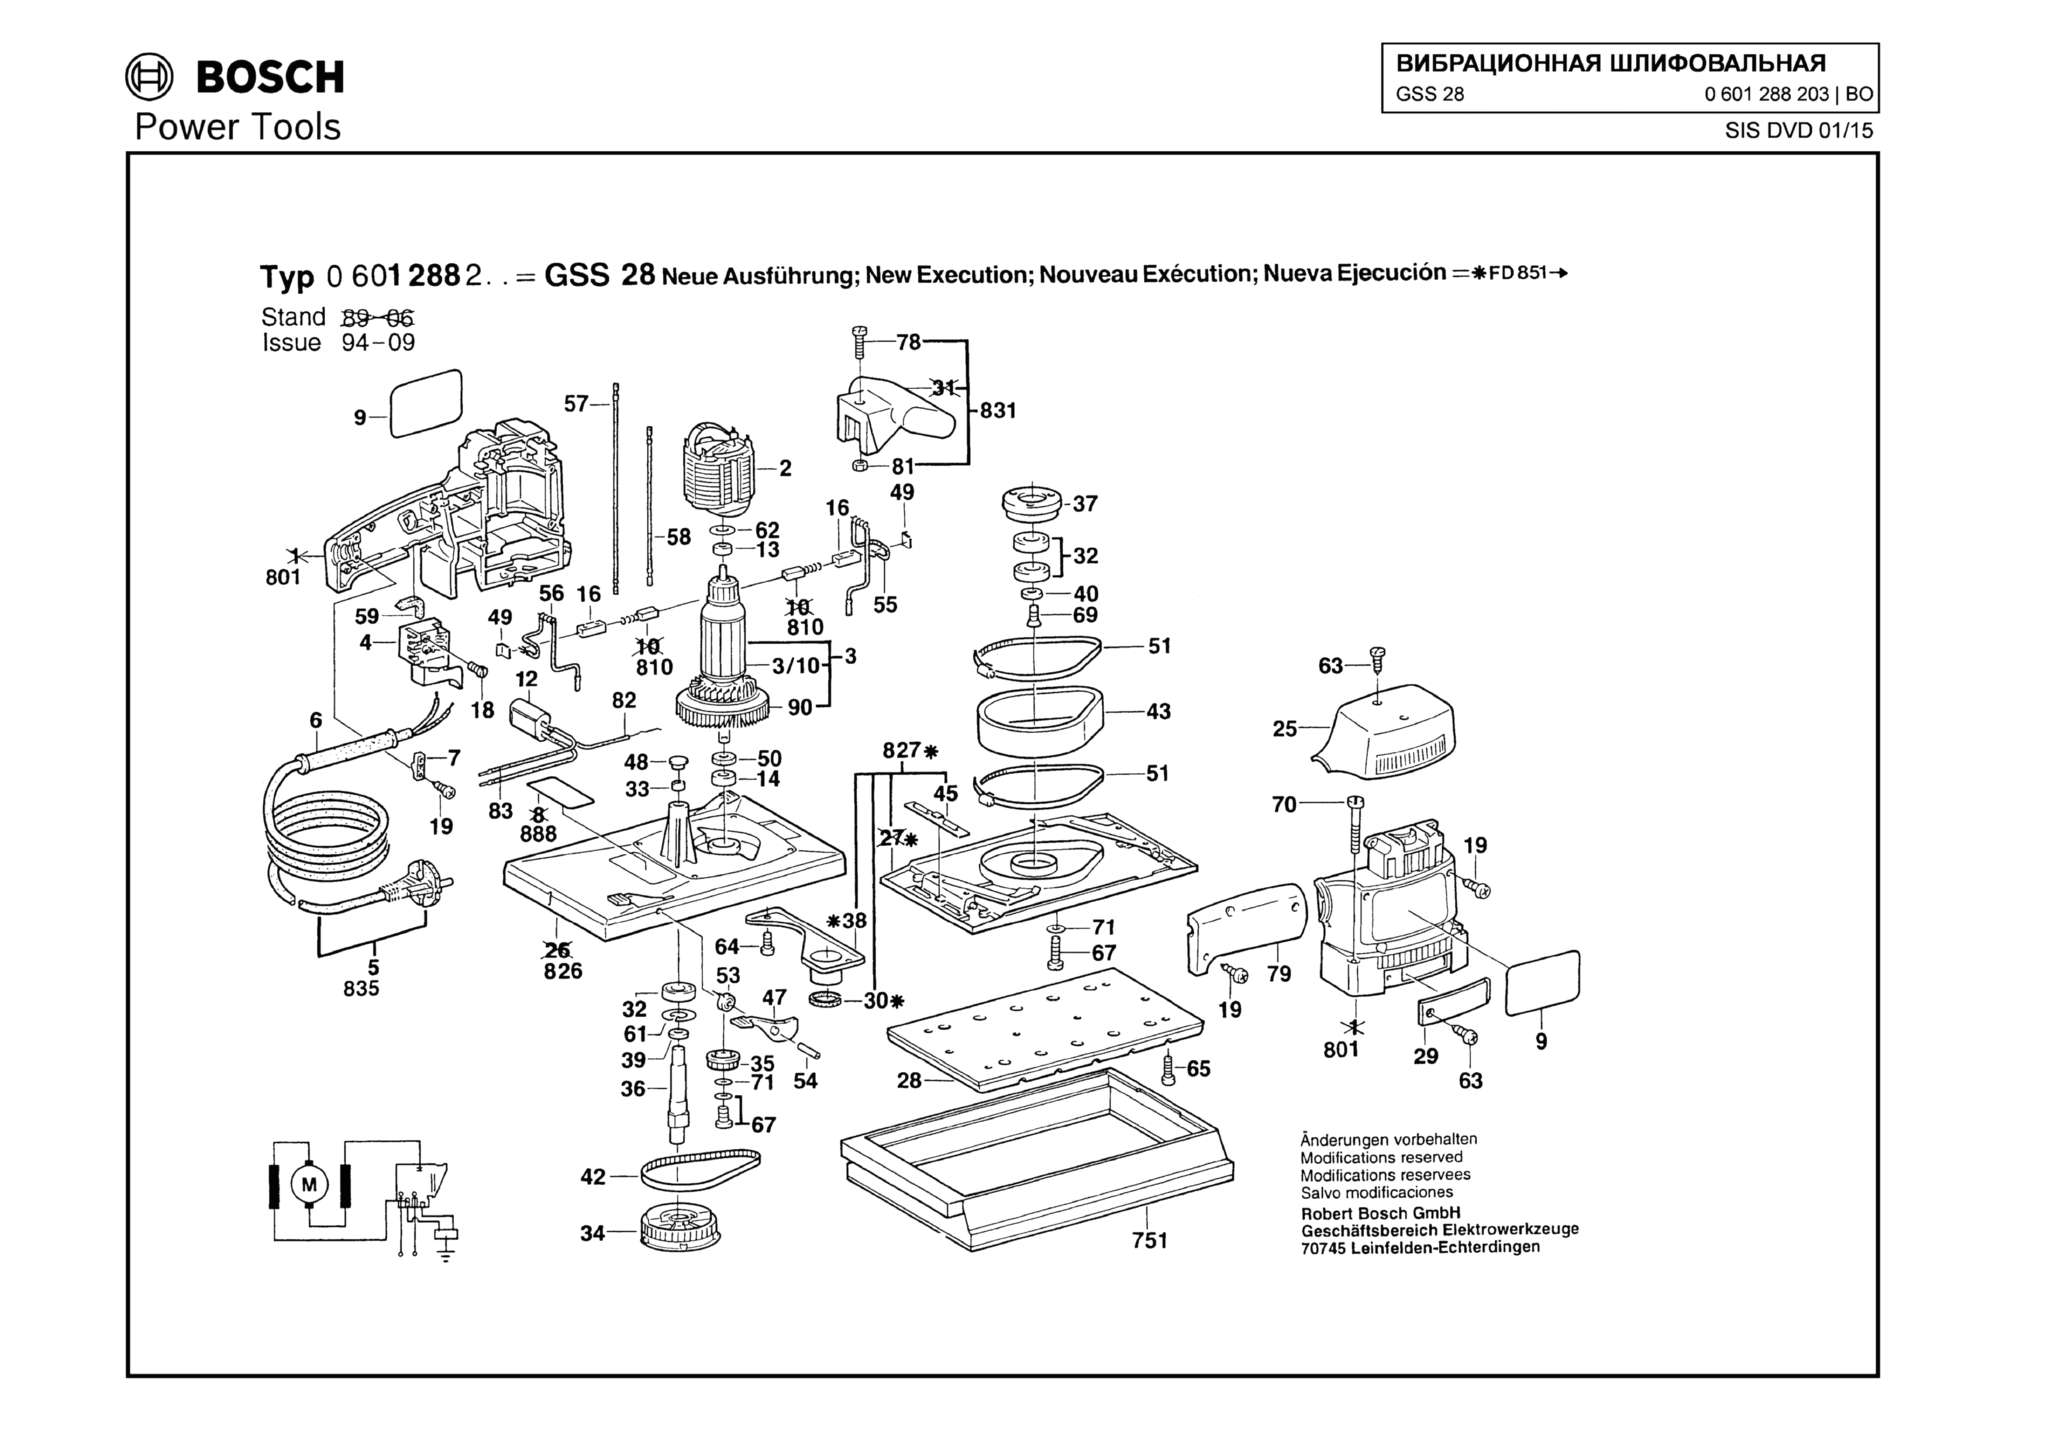 Запчасти, схема и деталировка Bosch GSS 28 (ТИП 0601288203)